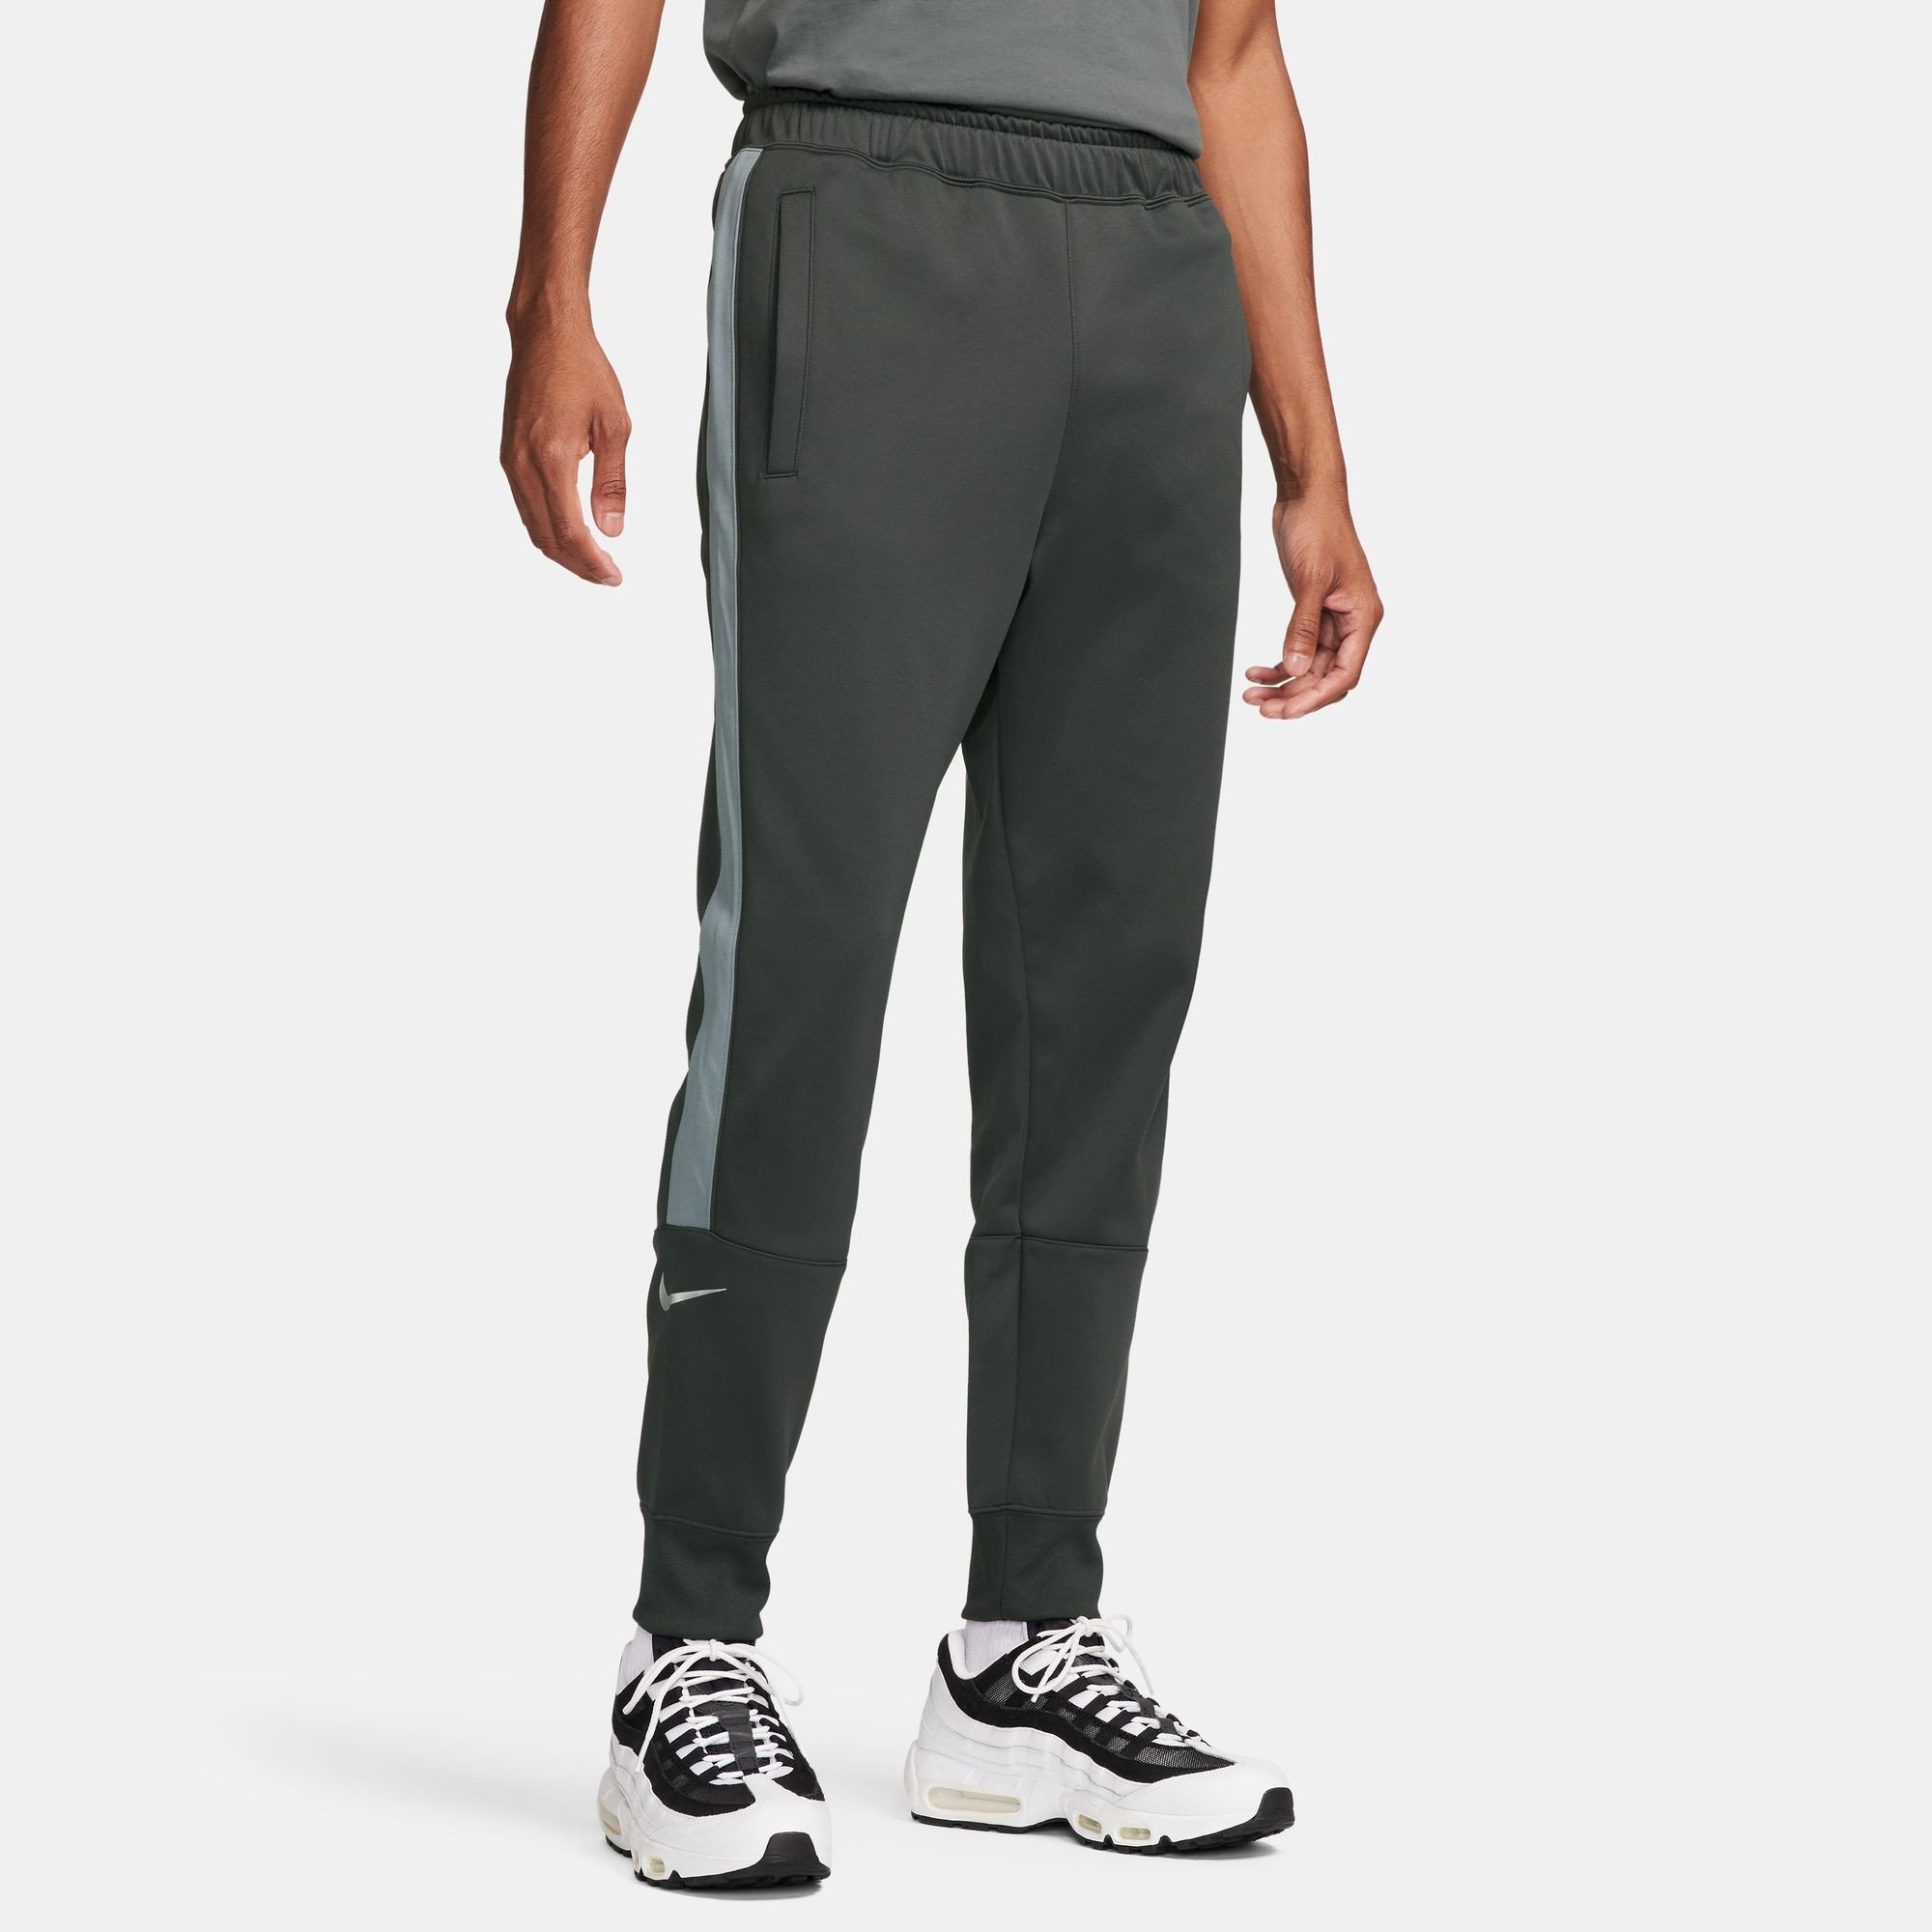 060 - Sneakers Nike Air Men's Jogger Pants Grey FQ8809 - Sneakers